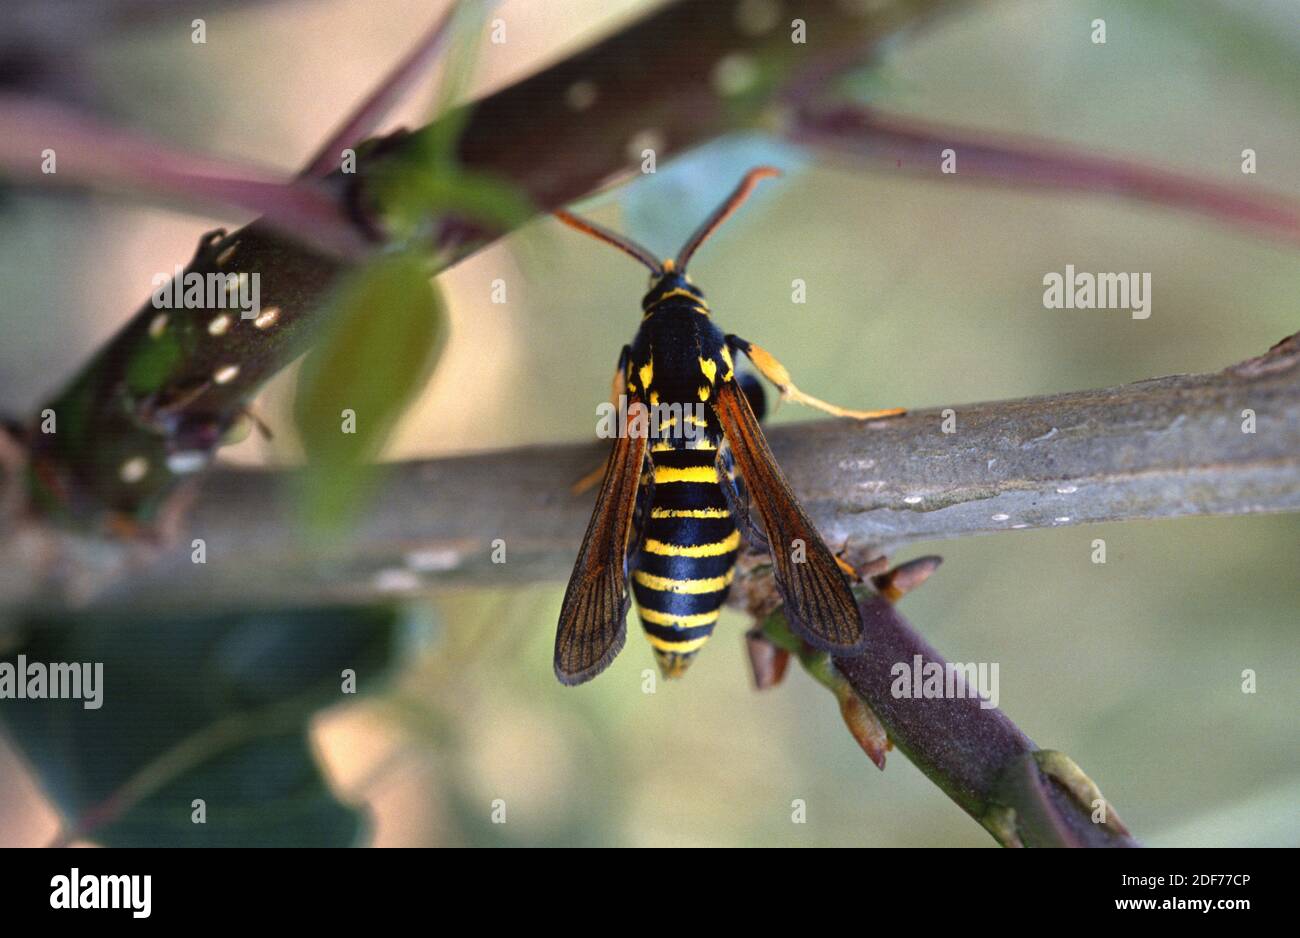 La polilla de Hornet (Sesia apiformis) es una polilla mímica nativa de Europa y Oriente Medio. Adulto. Foto de stock